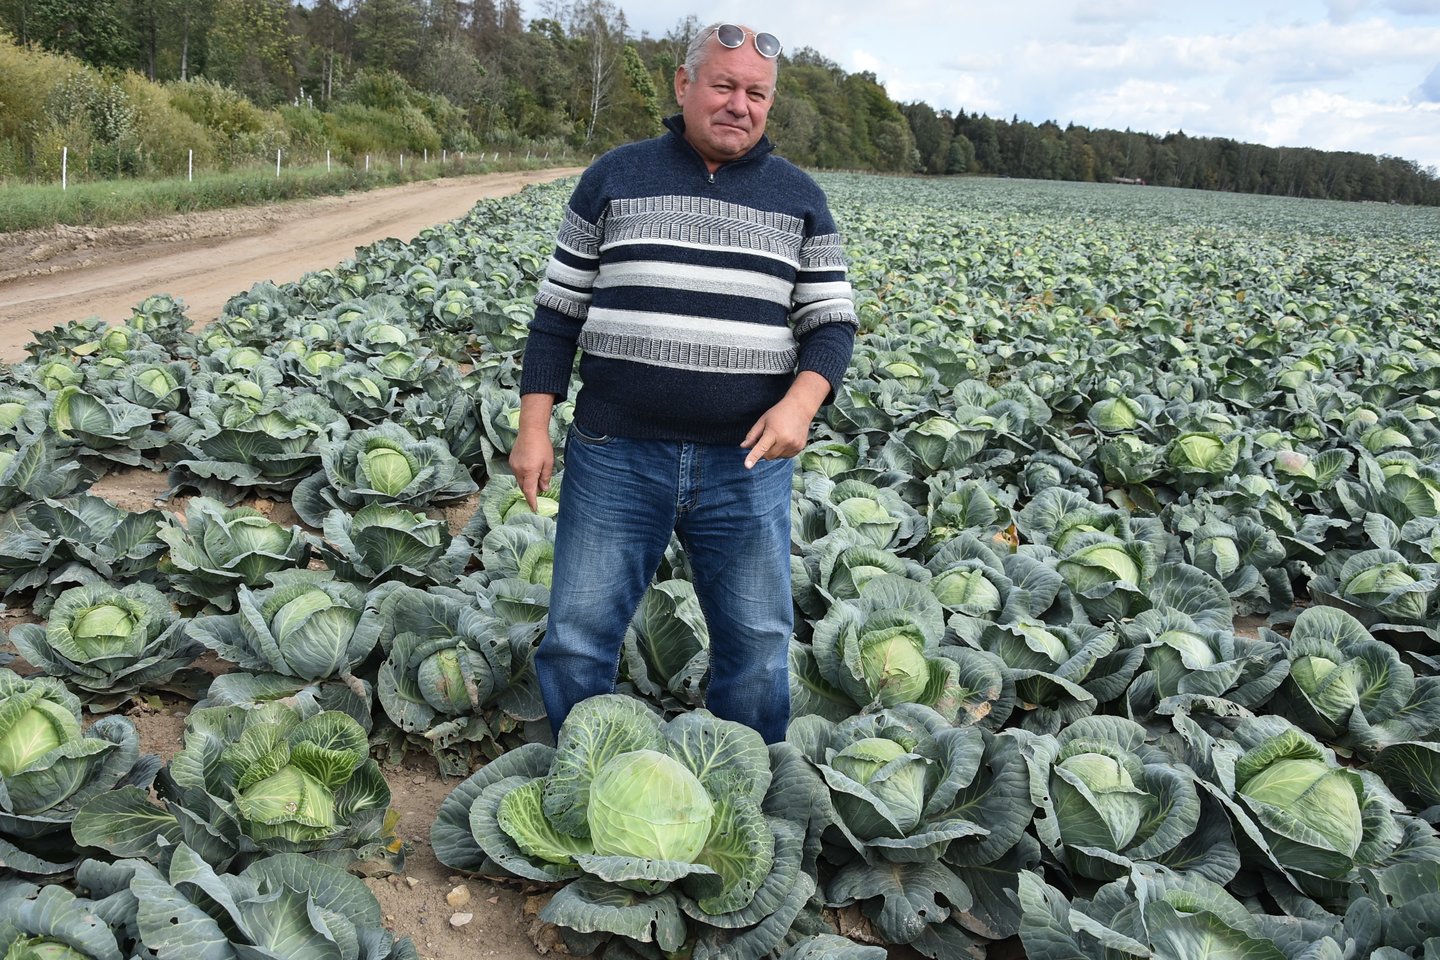 Pasak ūkininko V.Girdzijausko, daržovių augintojams svarbu užtikrinti nuolatinį jų tiekimą į parduotuves.<br> A.Srėbalienės nuotr. 